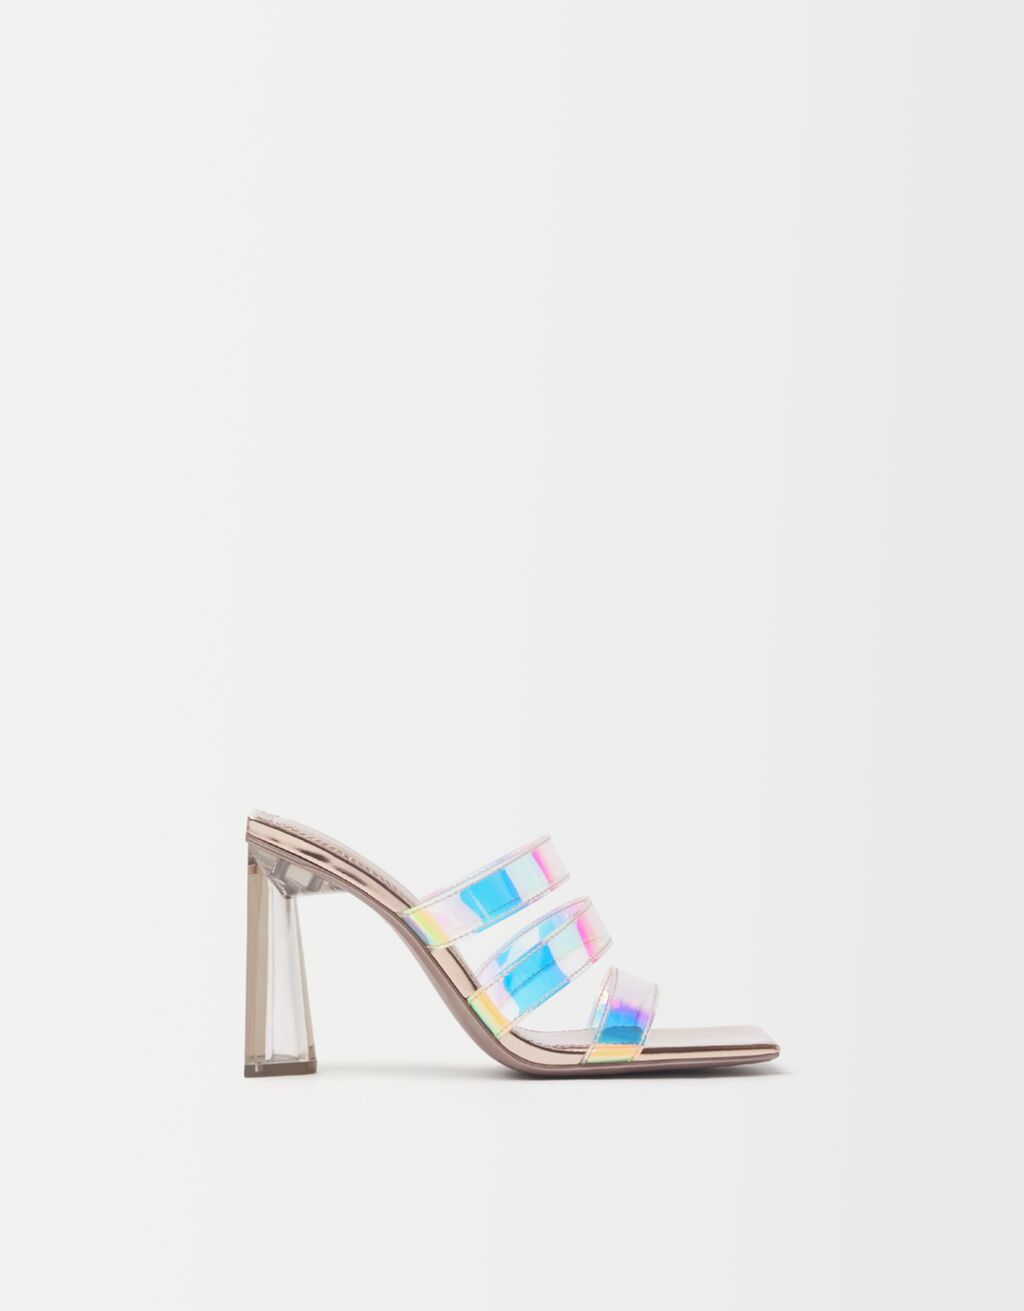 Vinyl iridescent sandals with methacrylate heels